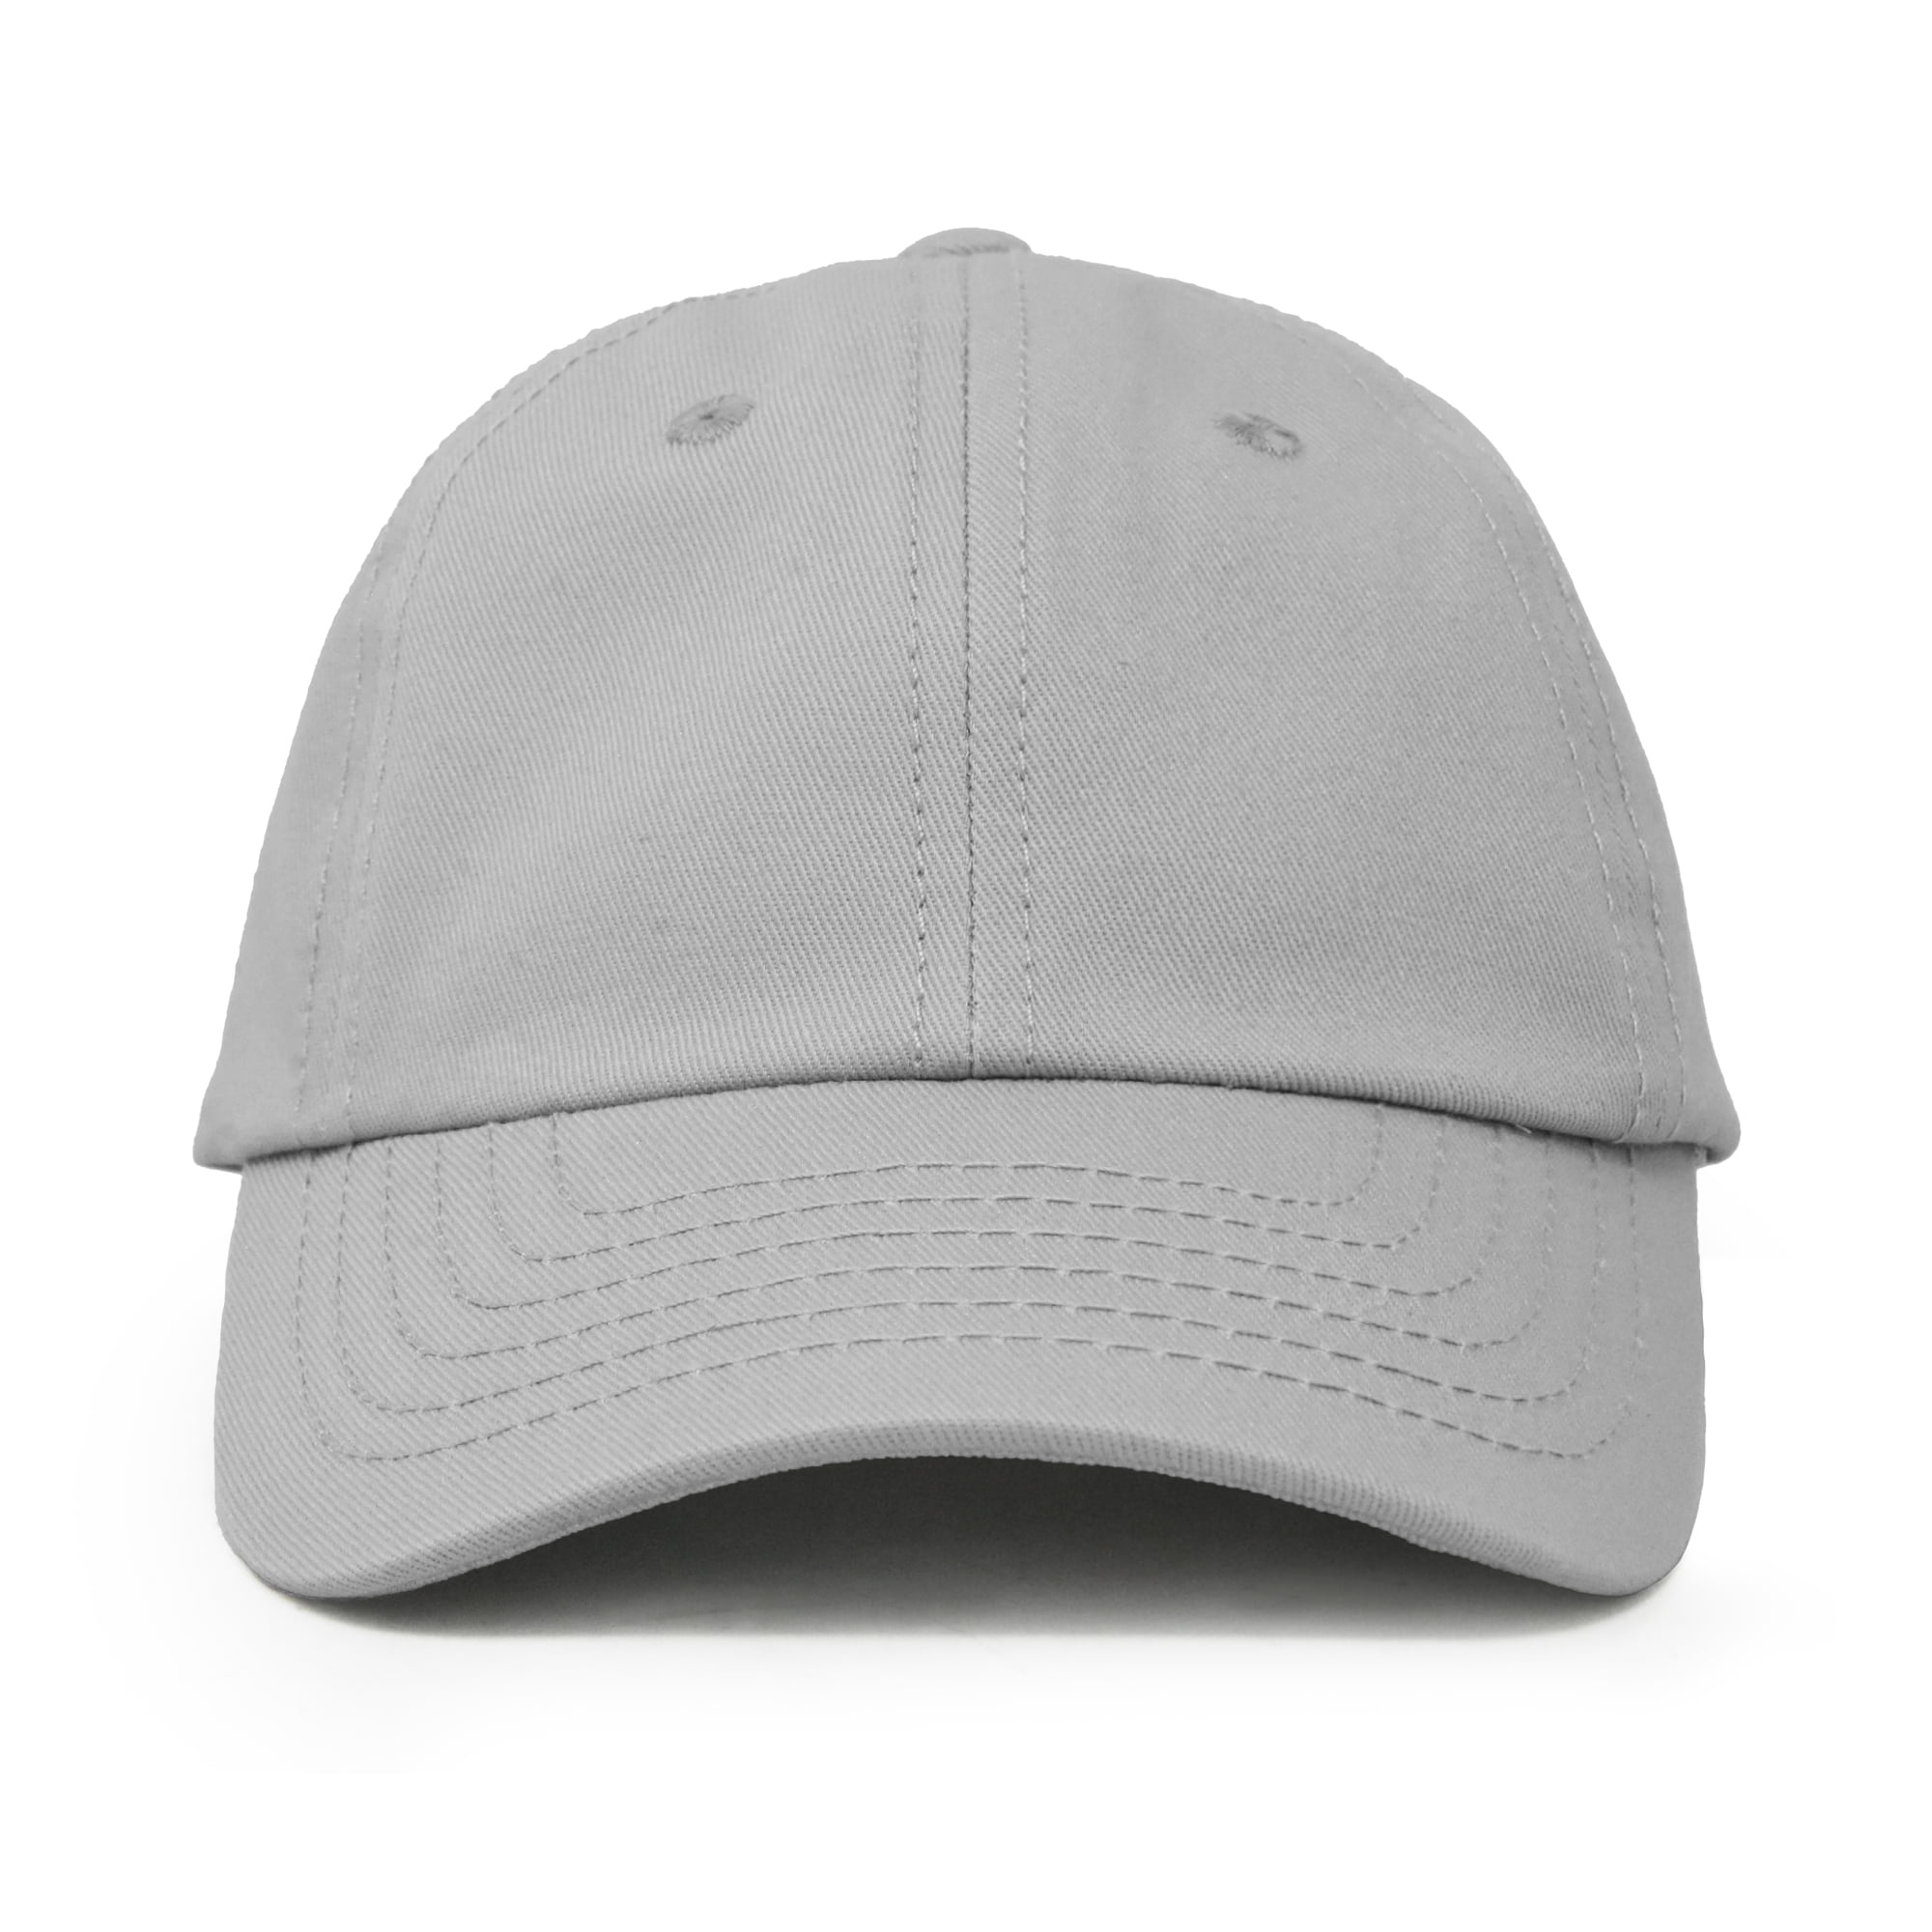 Kids Basecap gray, Summer cap Yuma for children